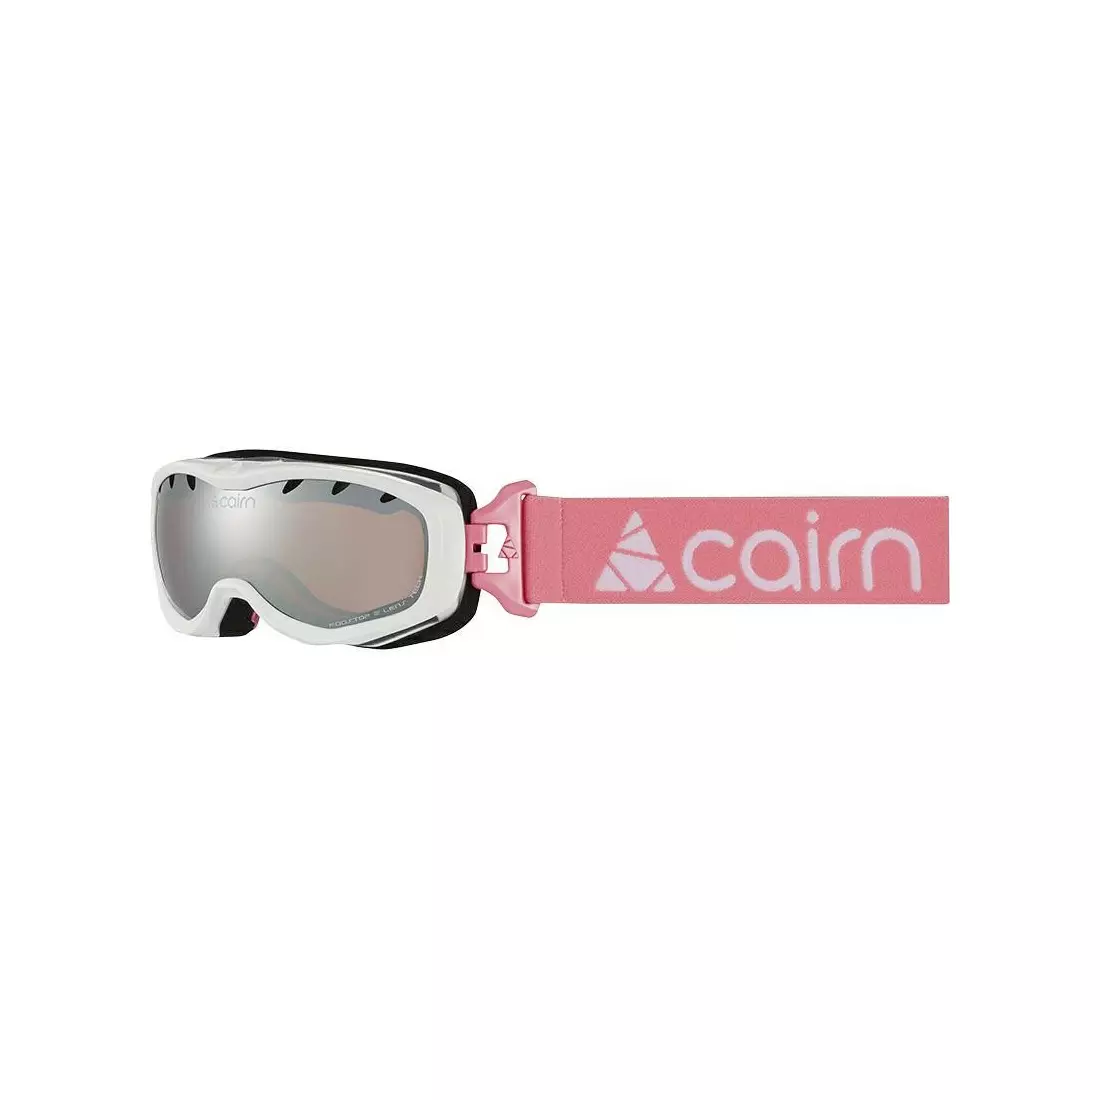 CAIRN gyermek sí/snowboard szemüveg RUSH SPX3000 Shiny White Candy Pink 